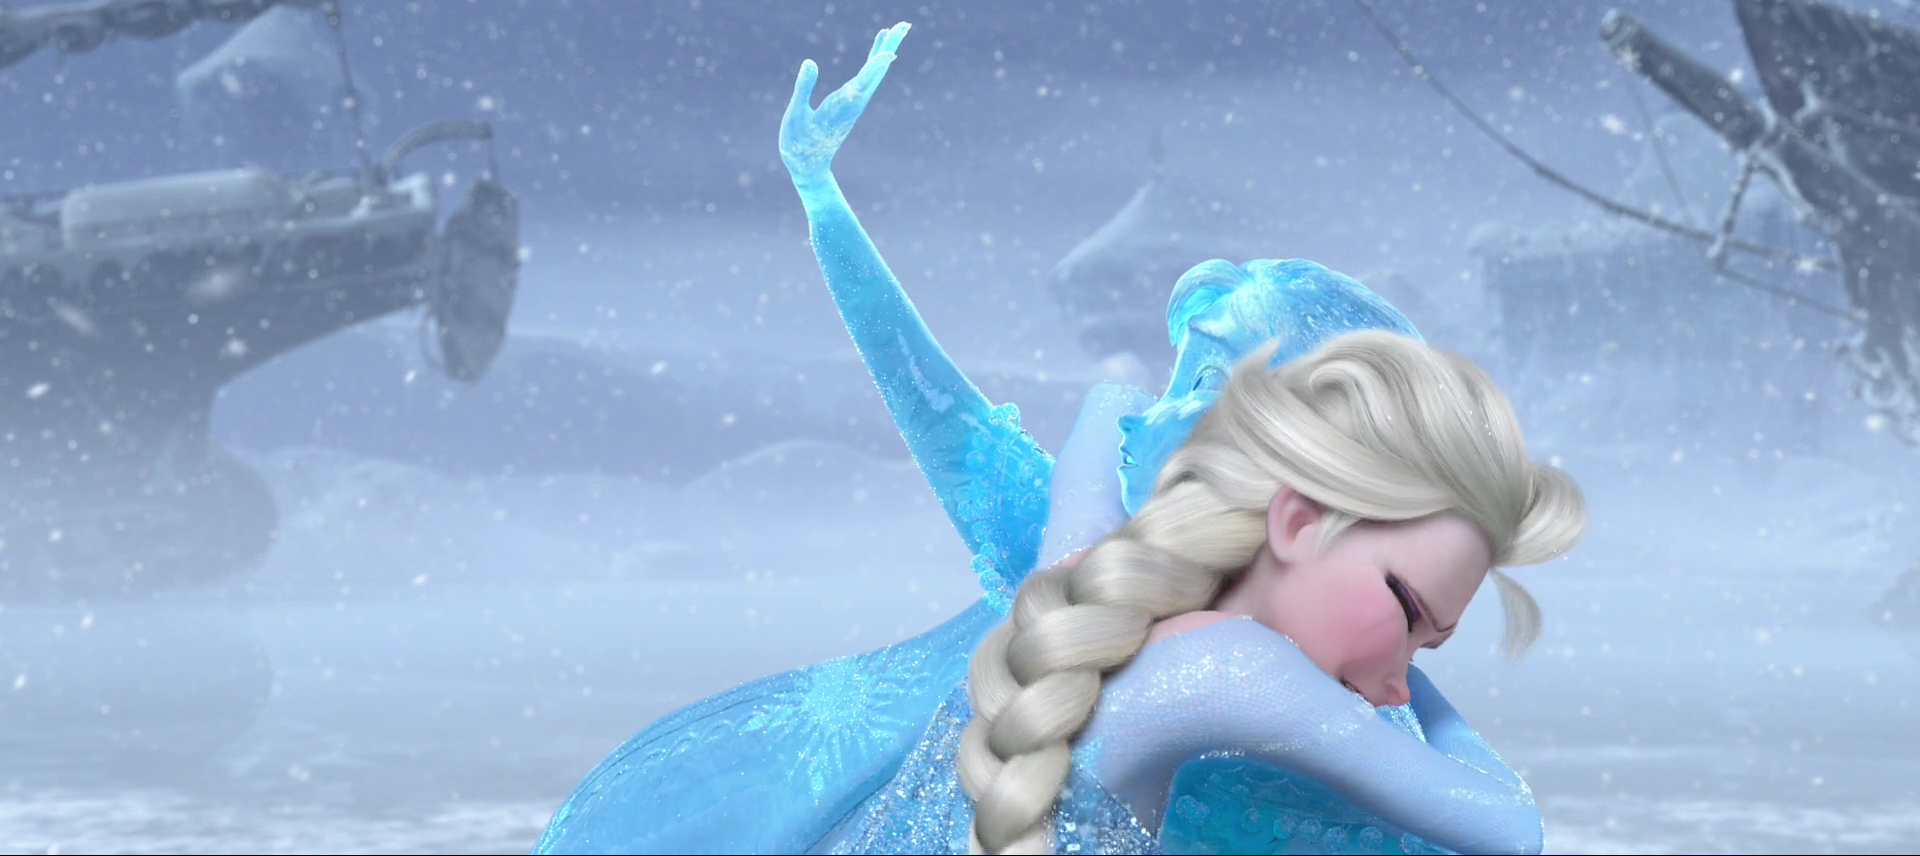 映画『アナと雪の女王』よりエルサと凍ったアナの画像